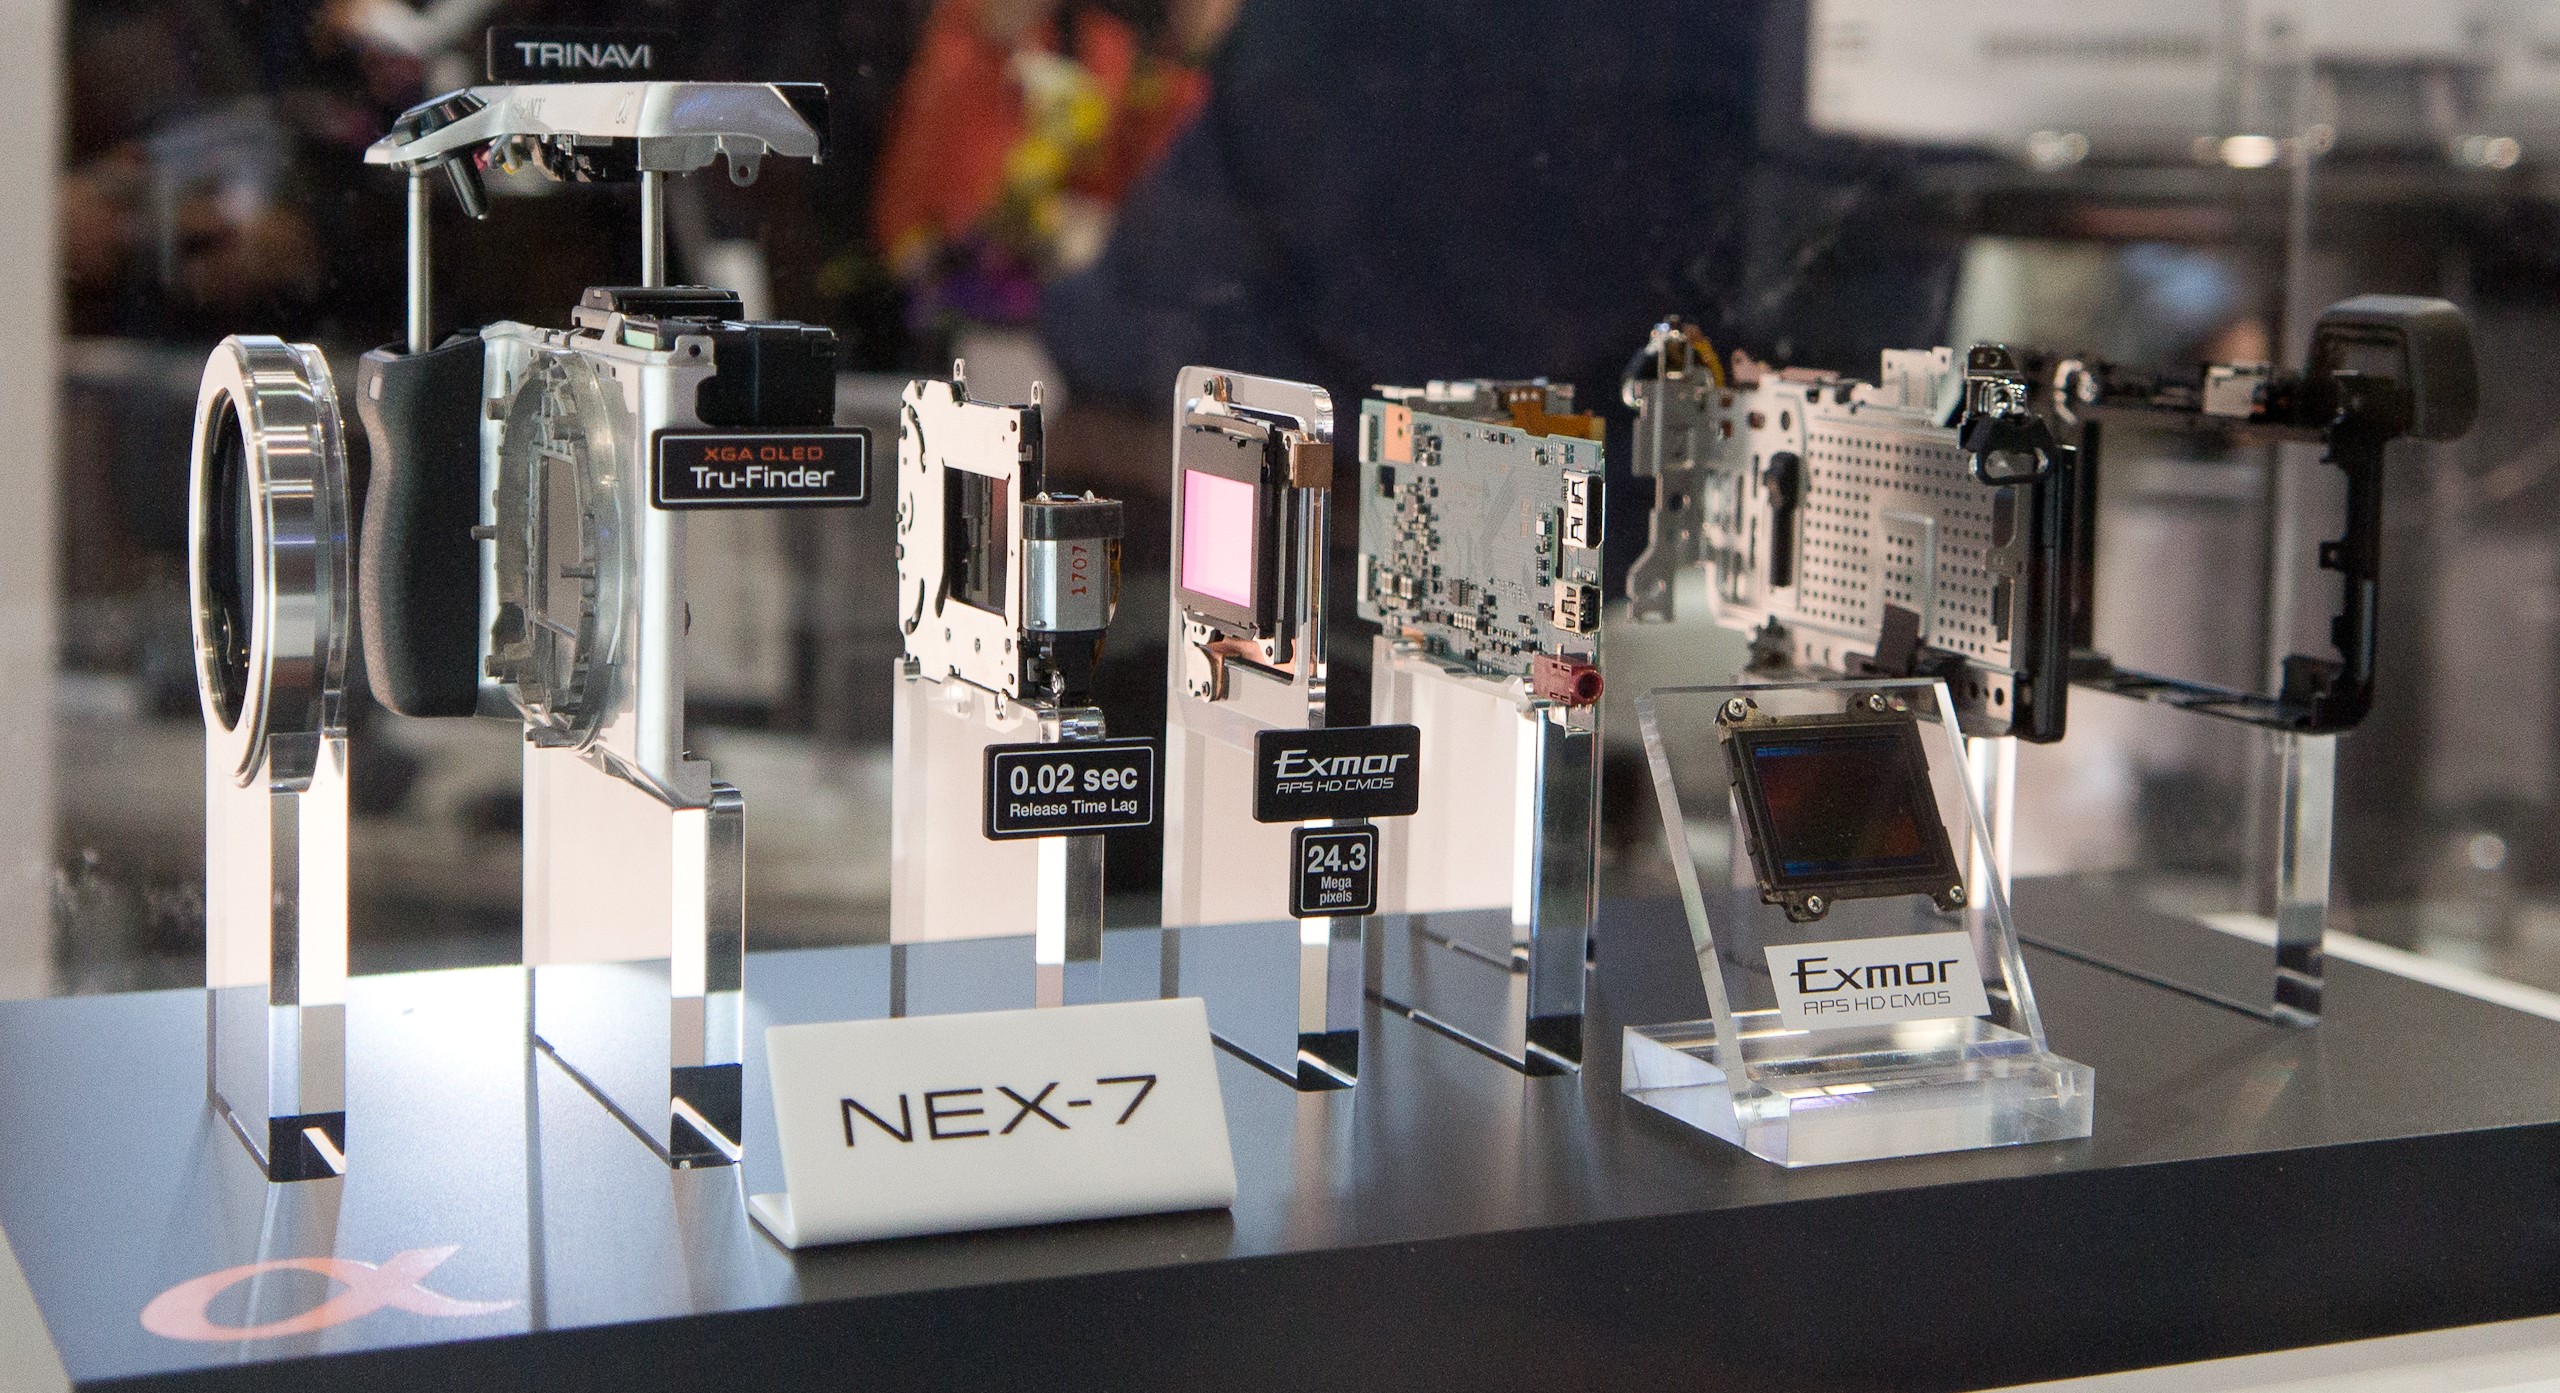 2012 Sony NEX-7 taken apart 2012 CP+